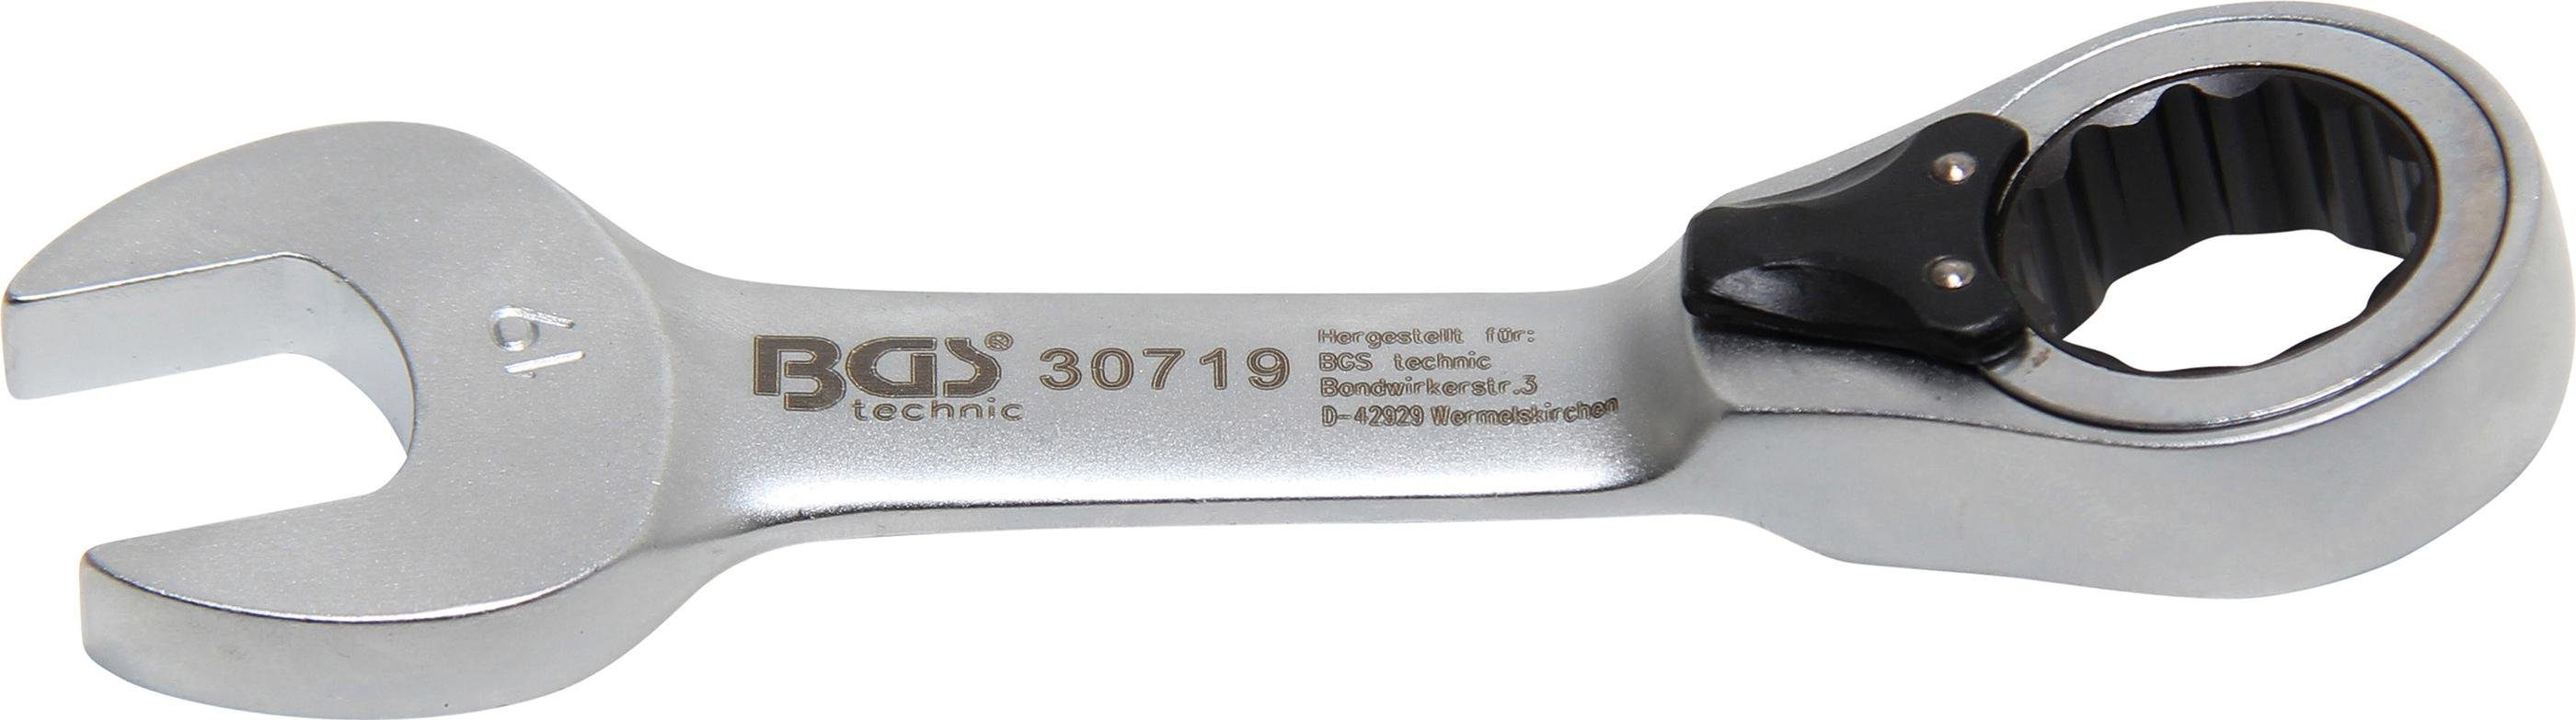 BGS technic Stecknuss Ratschenring-Maulschlüssel, kurz, umschaltbar, SW 19 mm